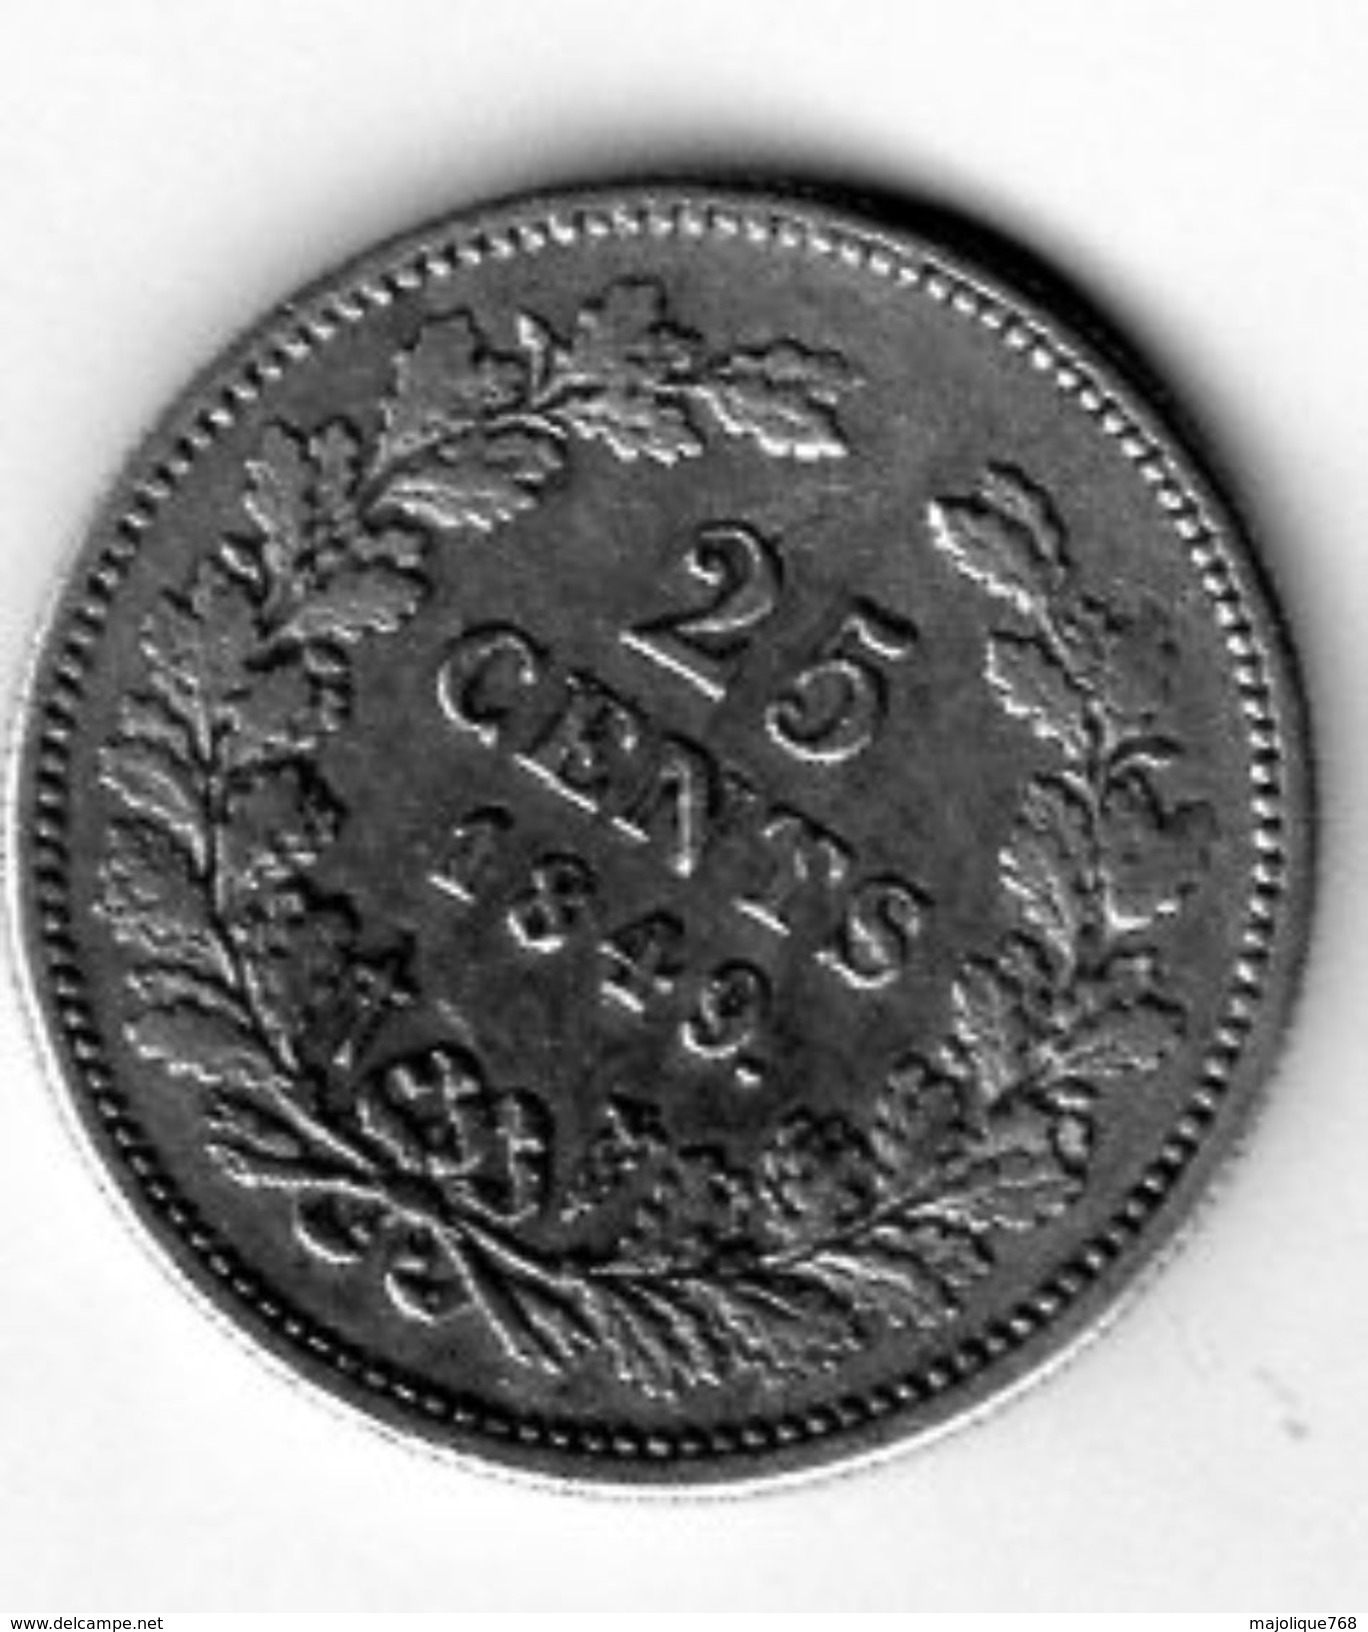 Pièce De Monnaie Du Pays-bas - 25 Cents Argent 1849 En T T B + - - 1840-1849: Willem II.